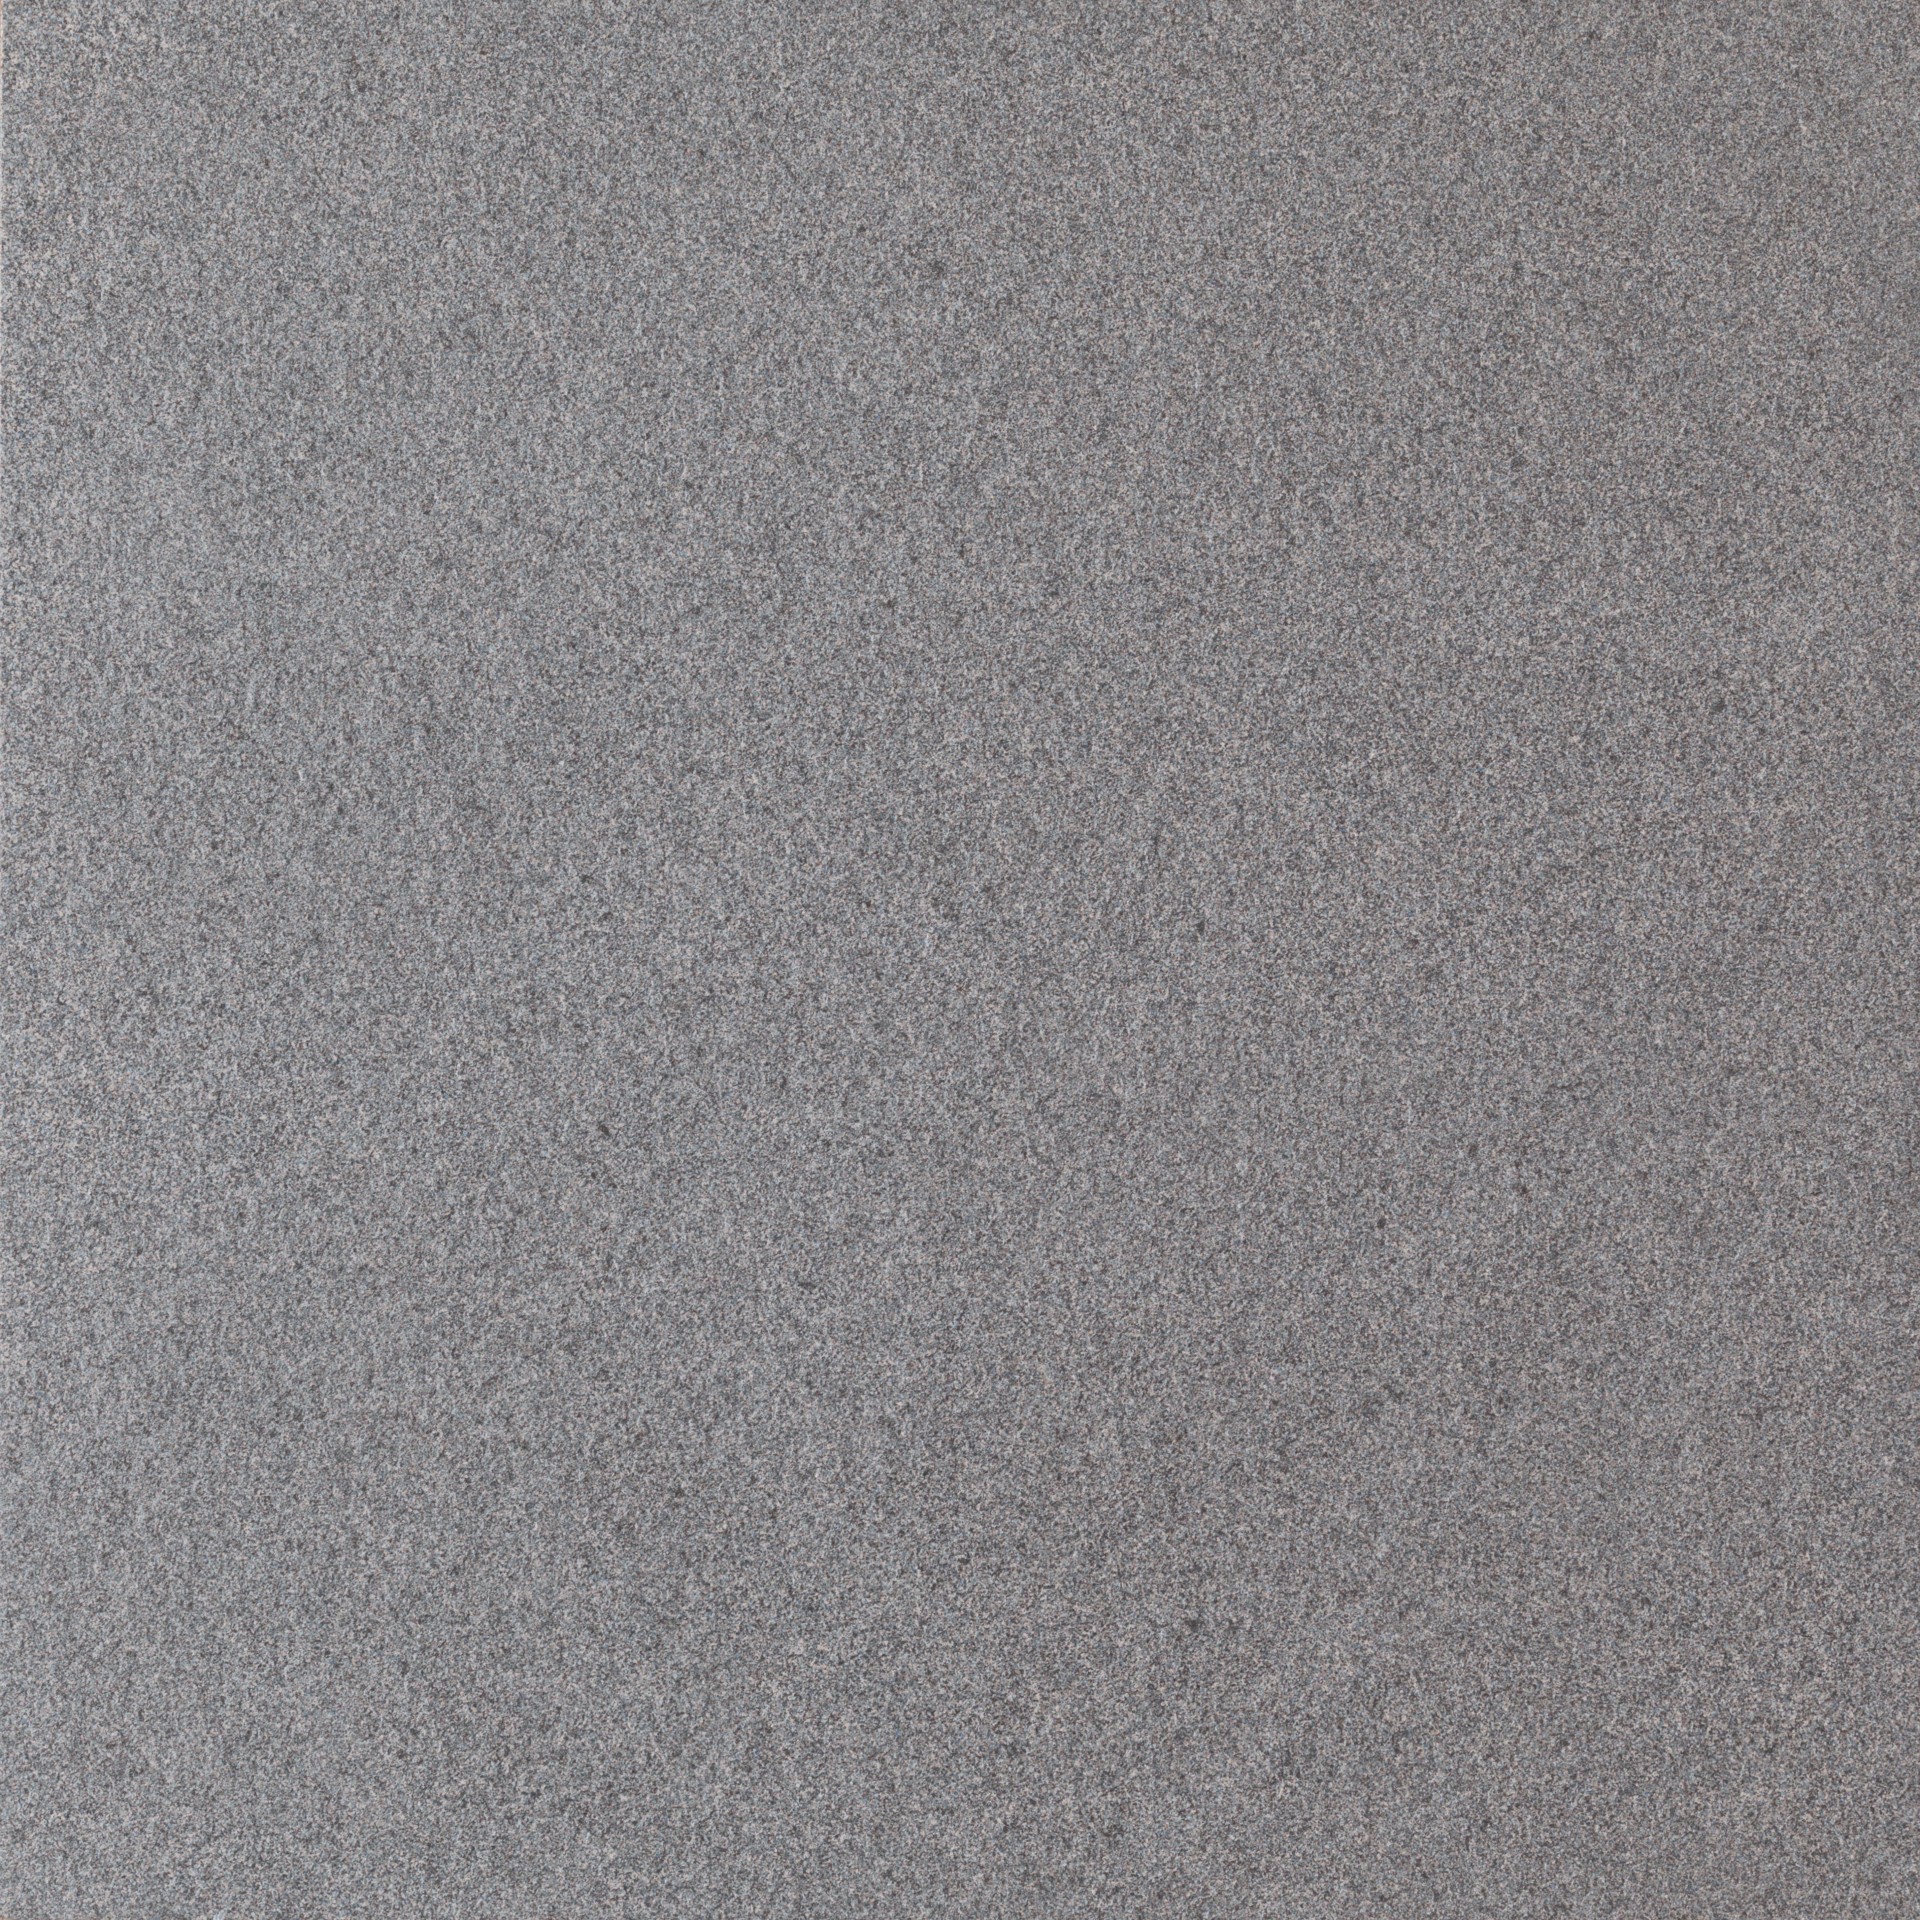 Alcalagres Natural Granit Grey 60x60x2